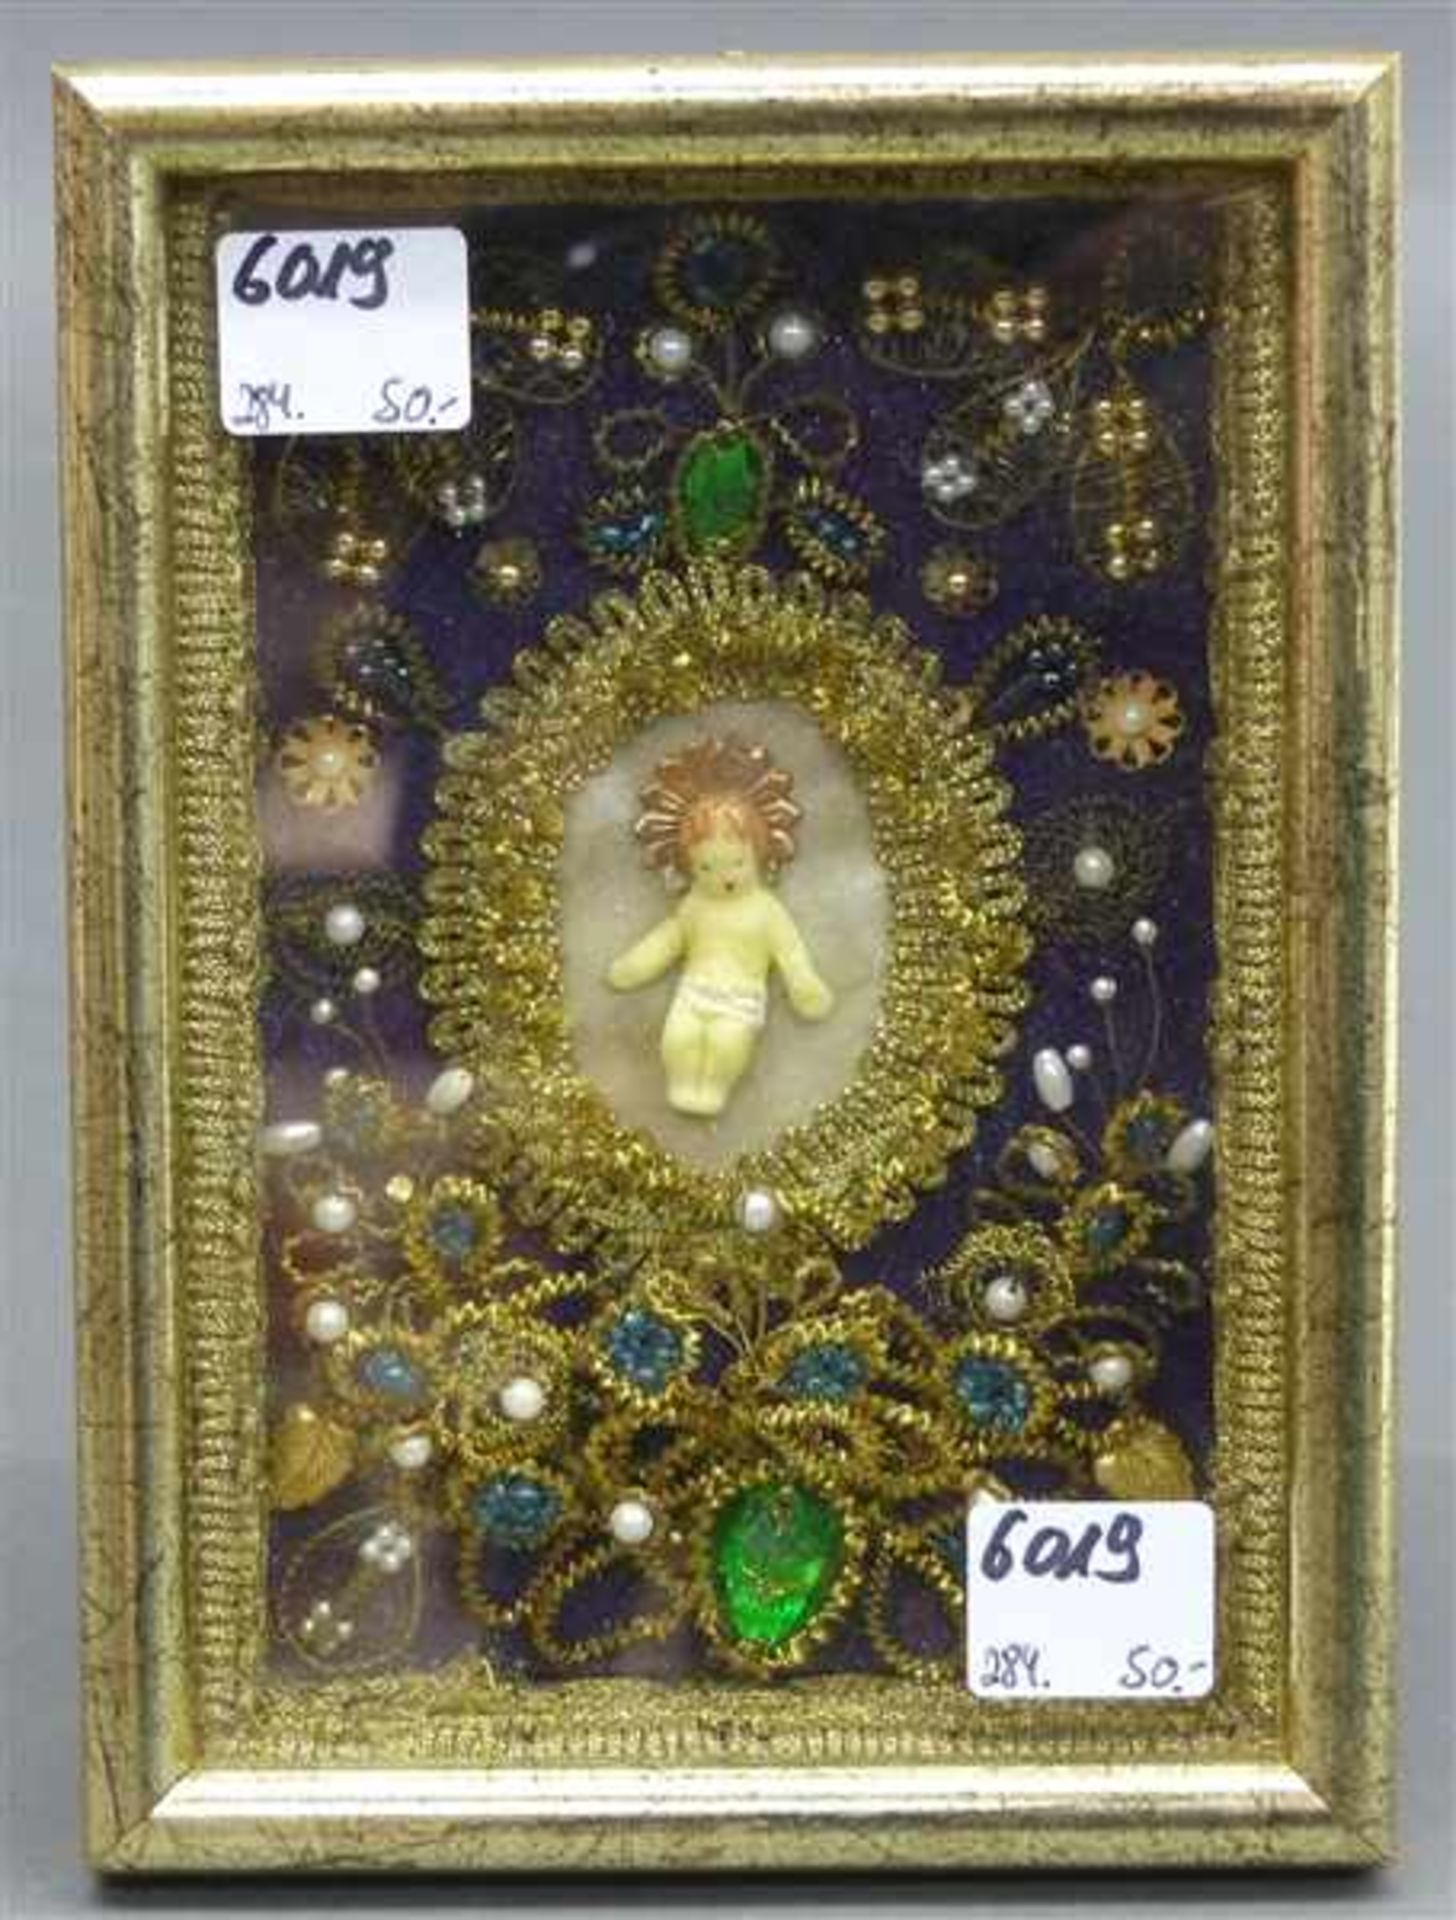 Klosterarbeit20. Jh., Wachsjesuskind mit Blüten und Golddrahtstickerei, 14,5x10 cm, im Rahmen,